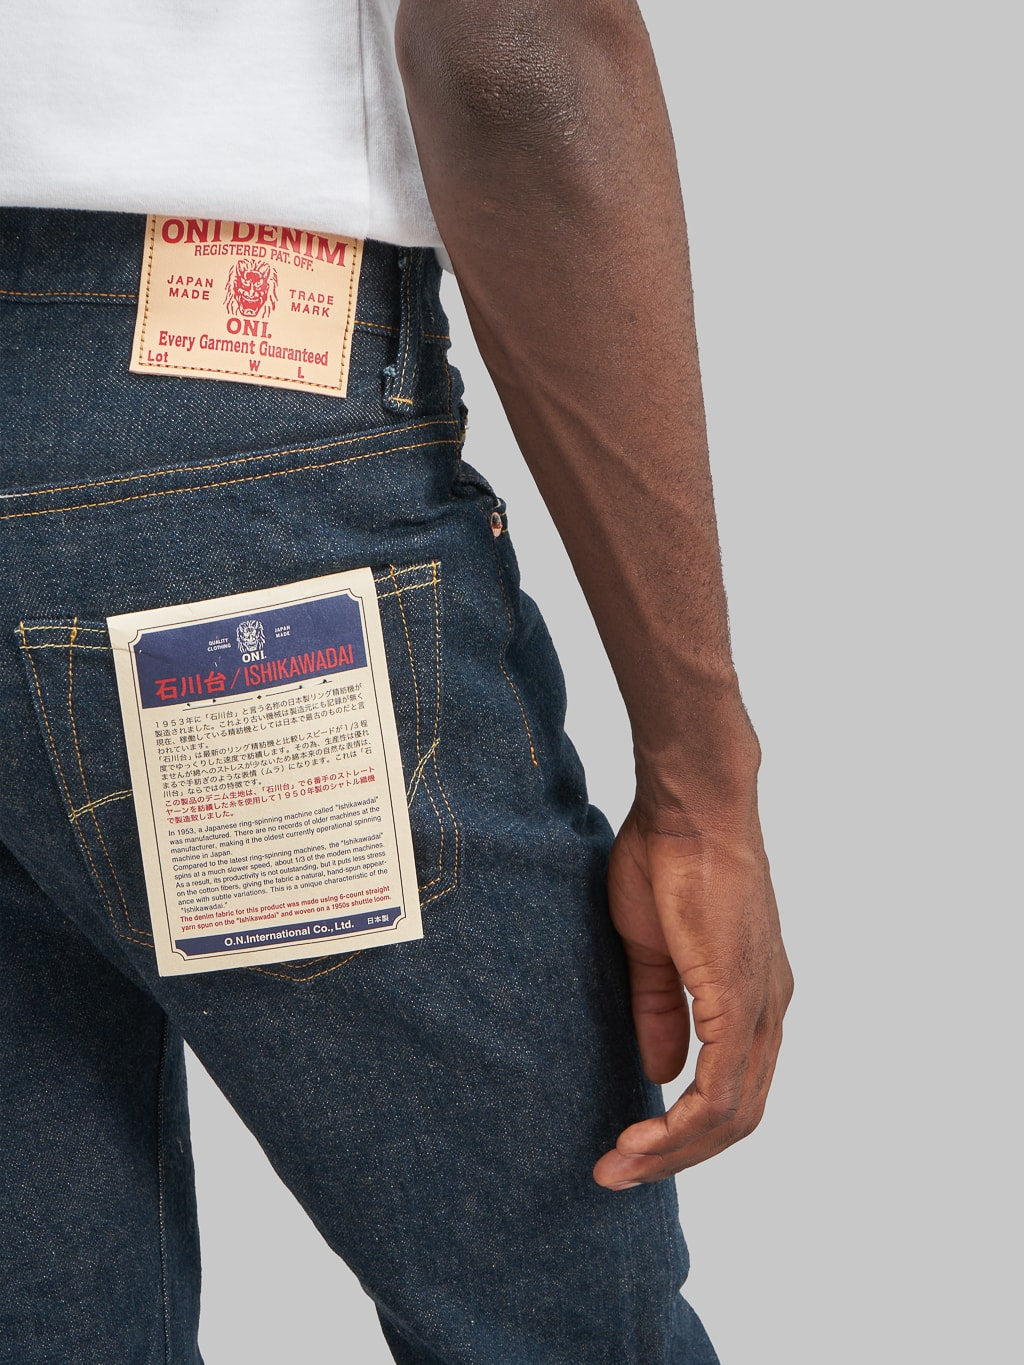 ONI Denim 902 Ishikawadai 15oz Jeans back pocket